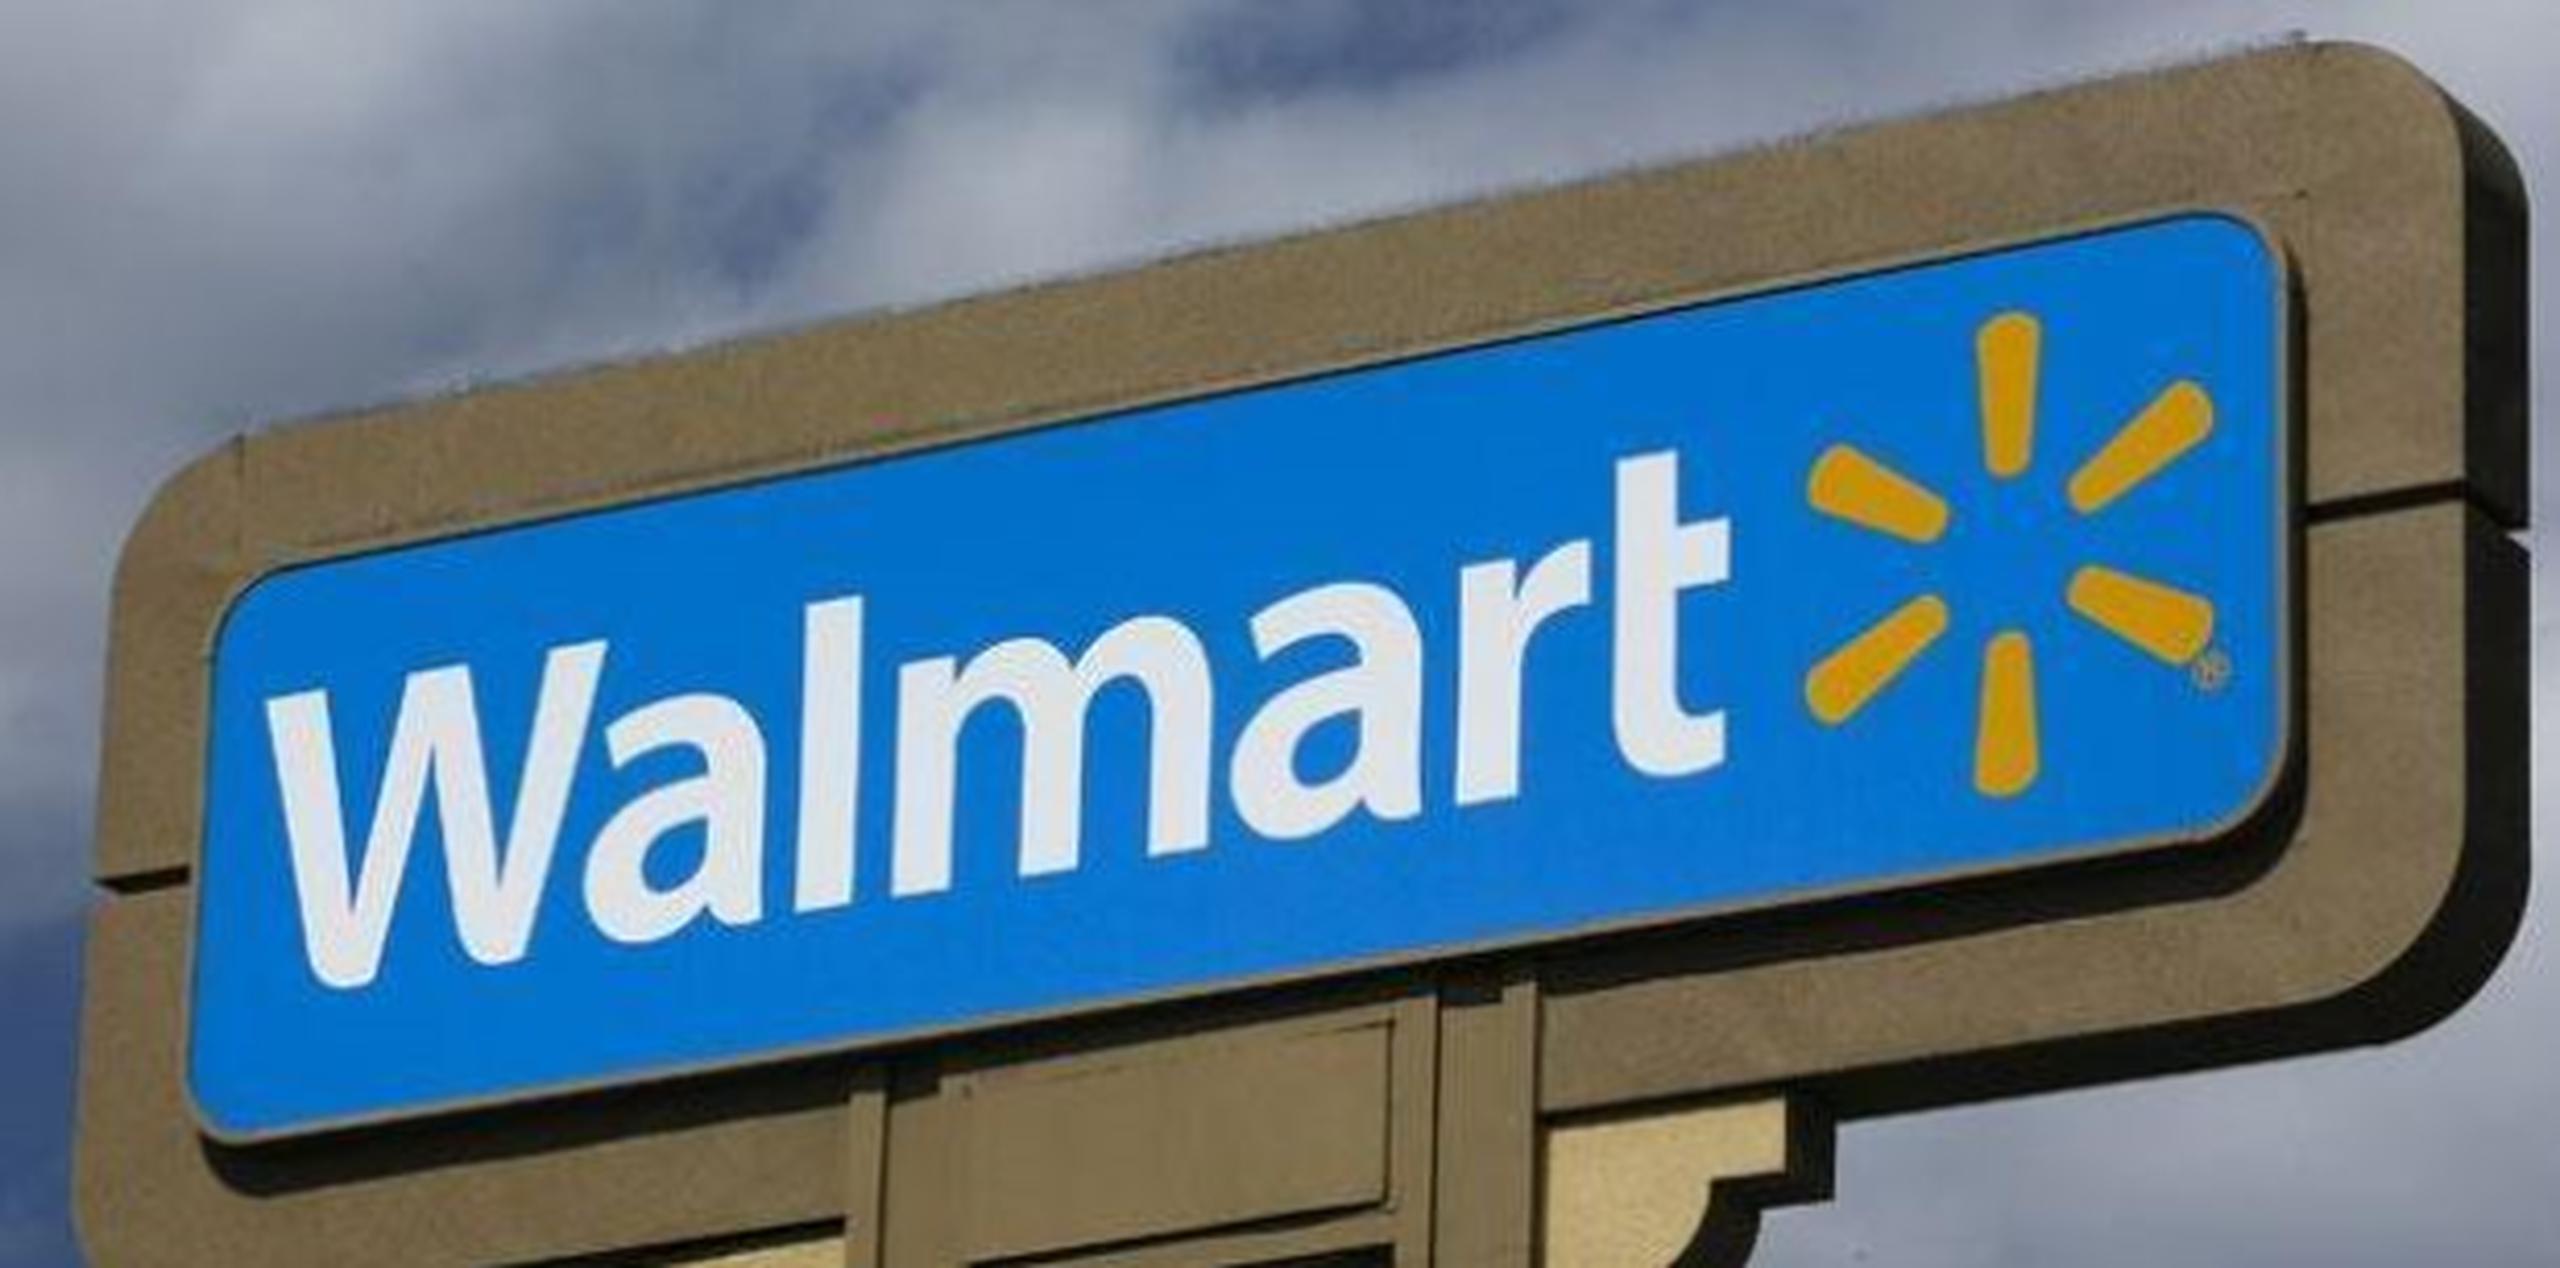 El director de asuntos públicos de la empresa, Iván Báez, informó que a partir del próximo domingo, 5 de febrero, las tiendas Walmart abrirán los domingos ininterrumpidamente 24 horas. (Archivo)